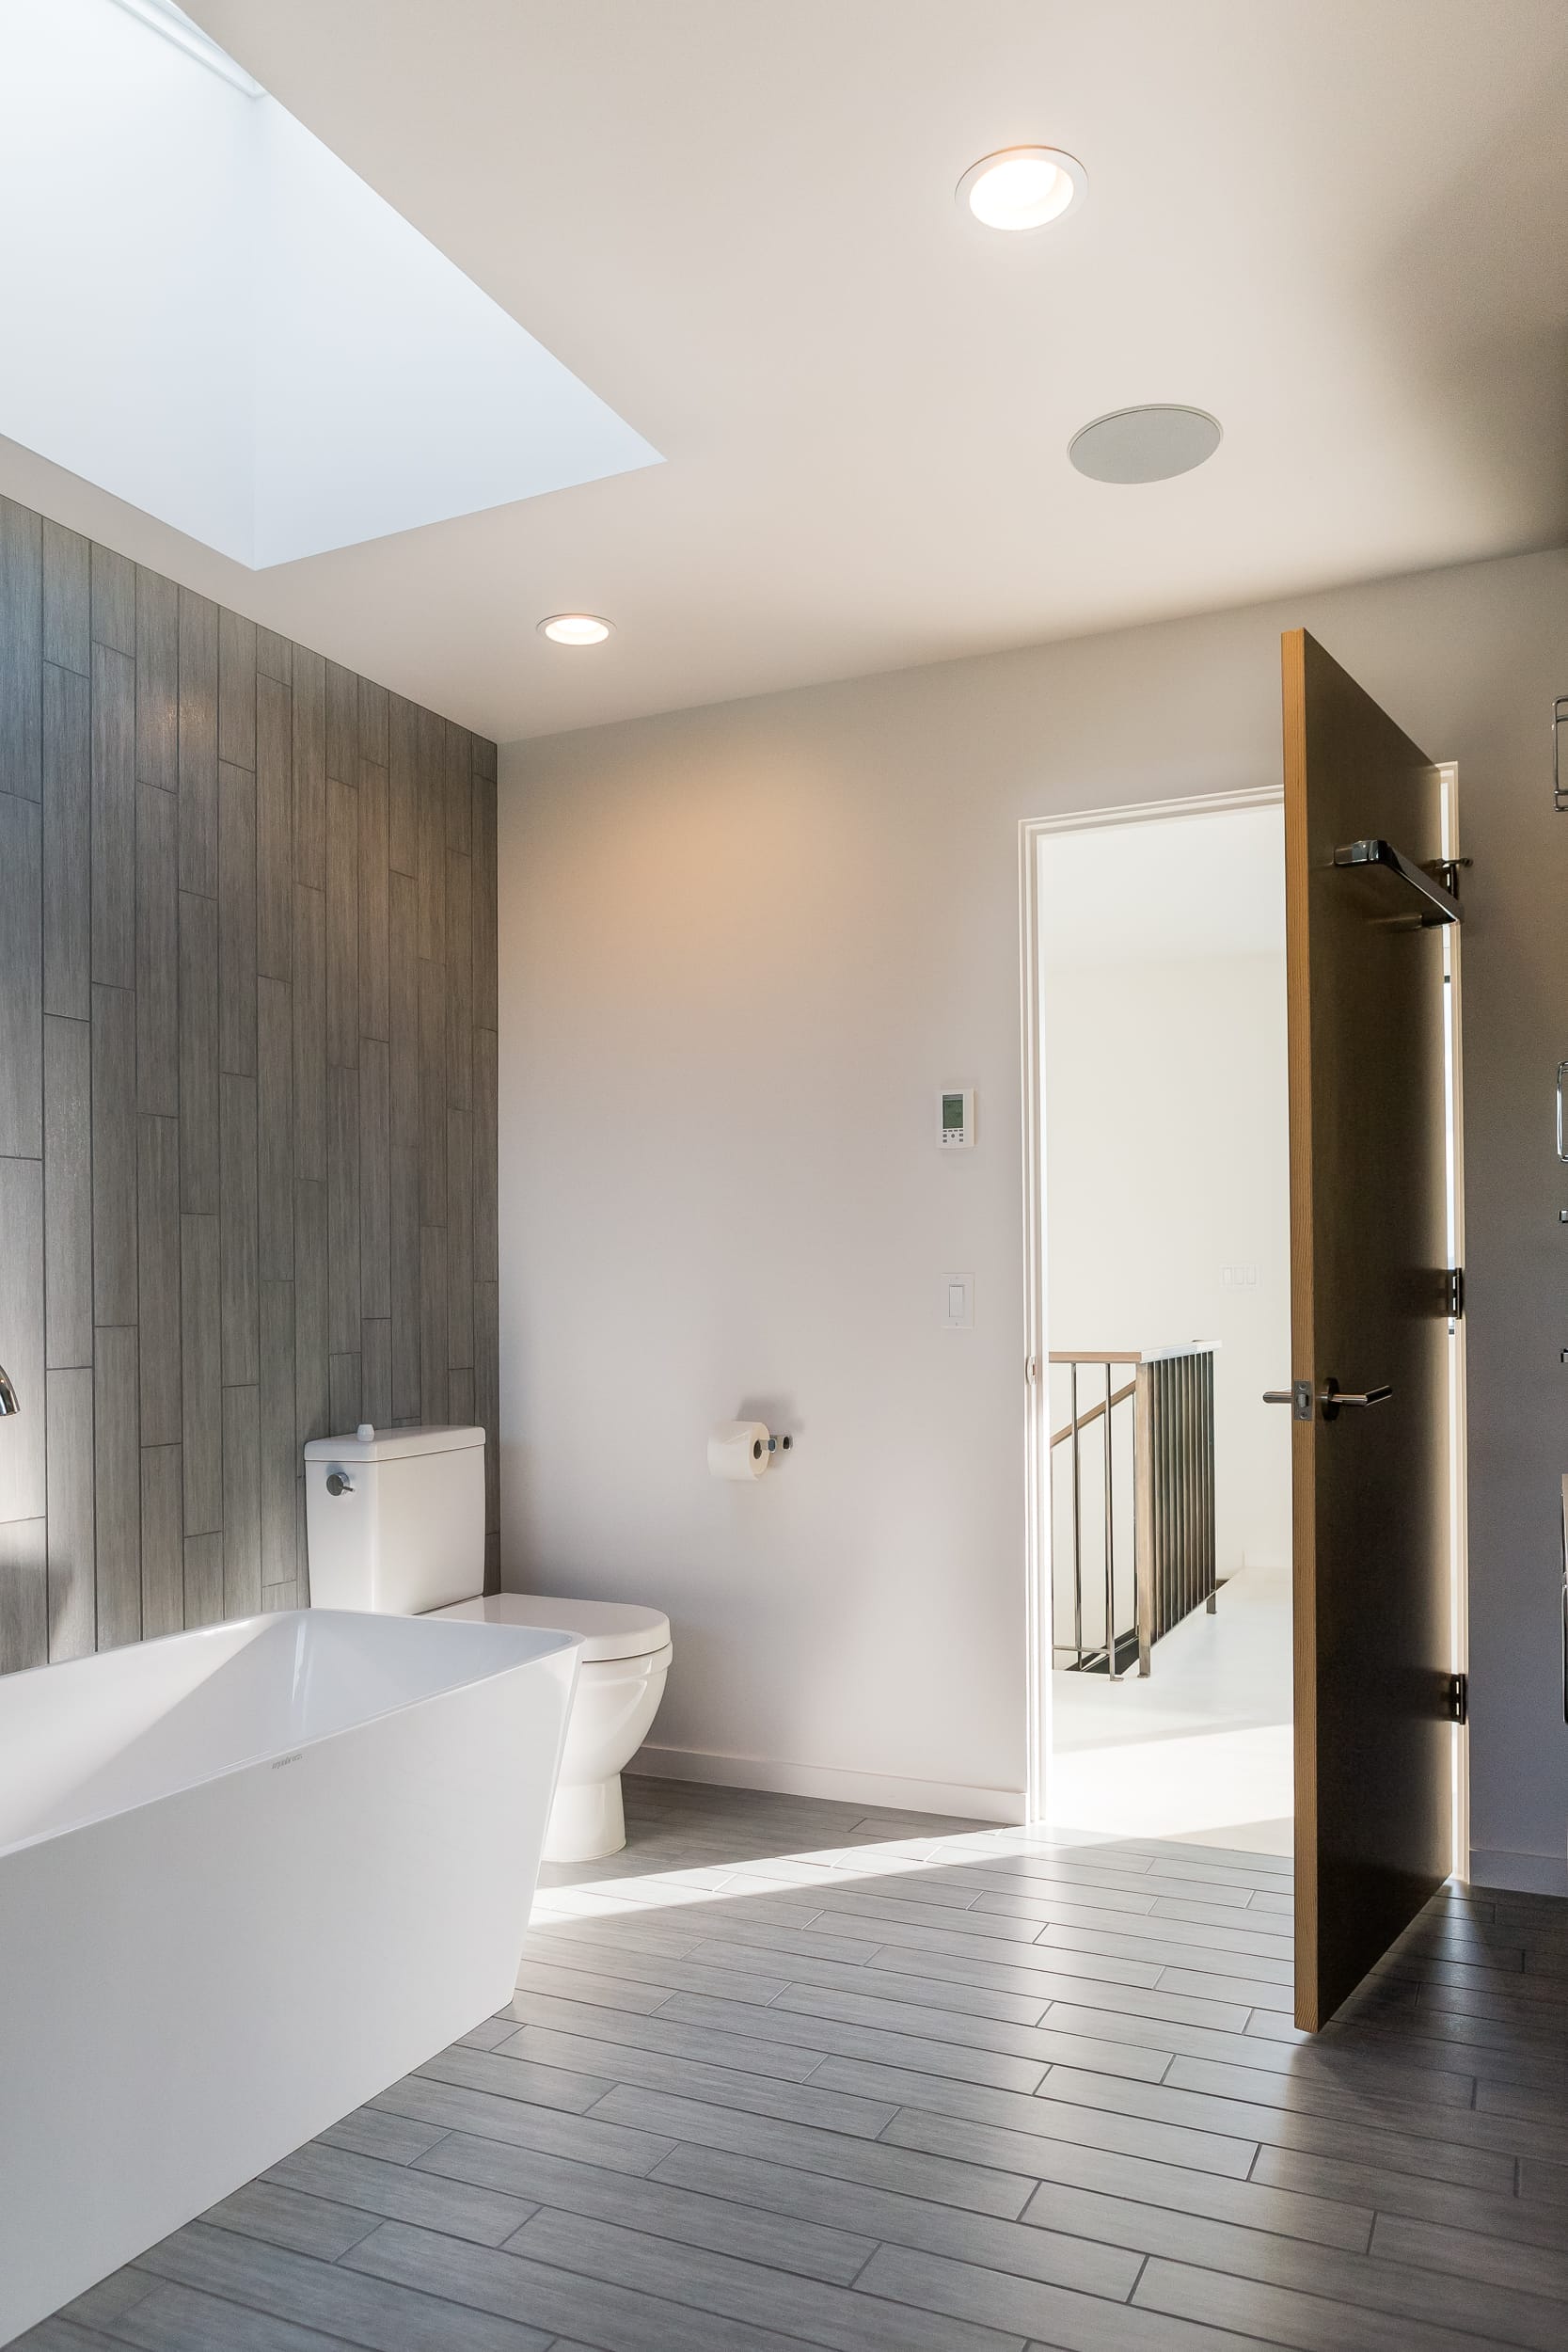 A modern bathroom with a skylight and wooden floors.